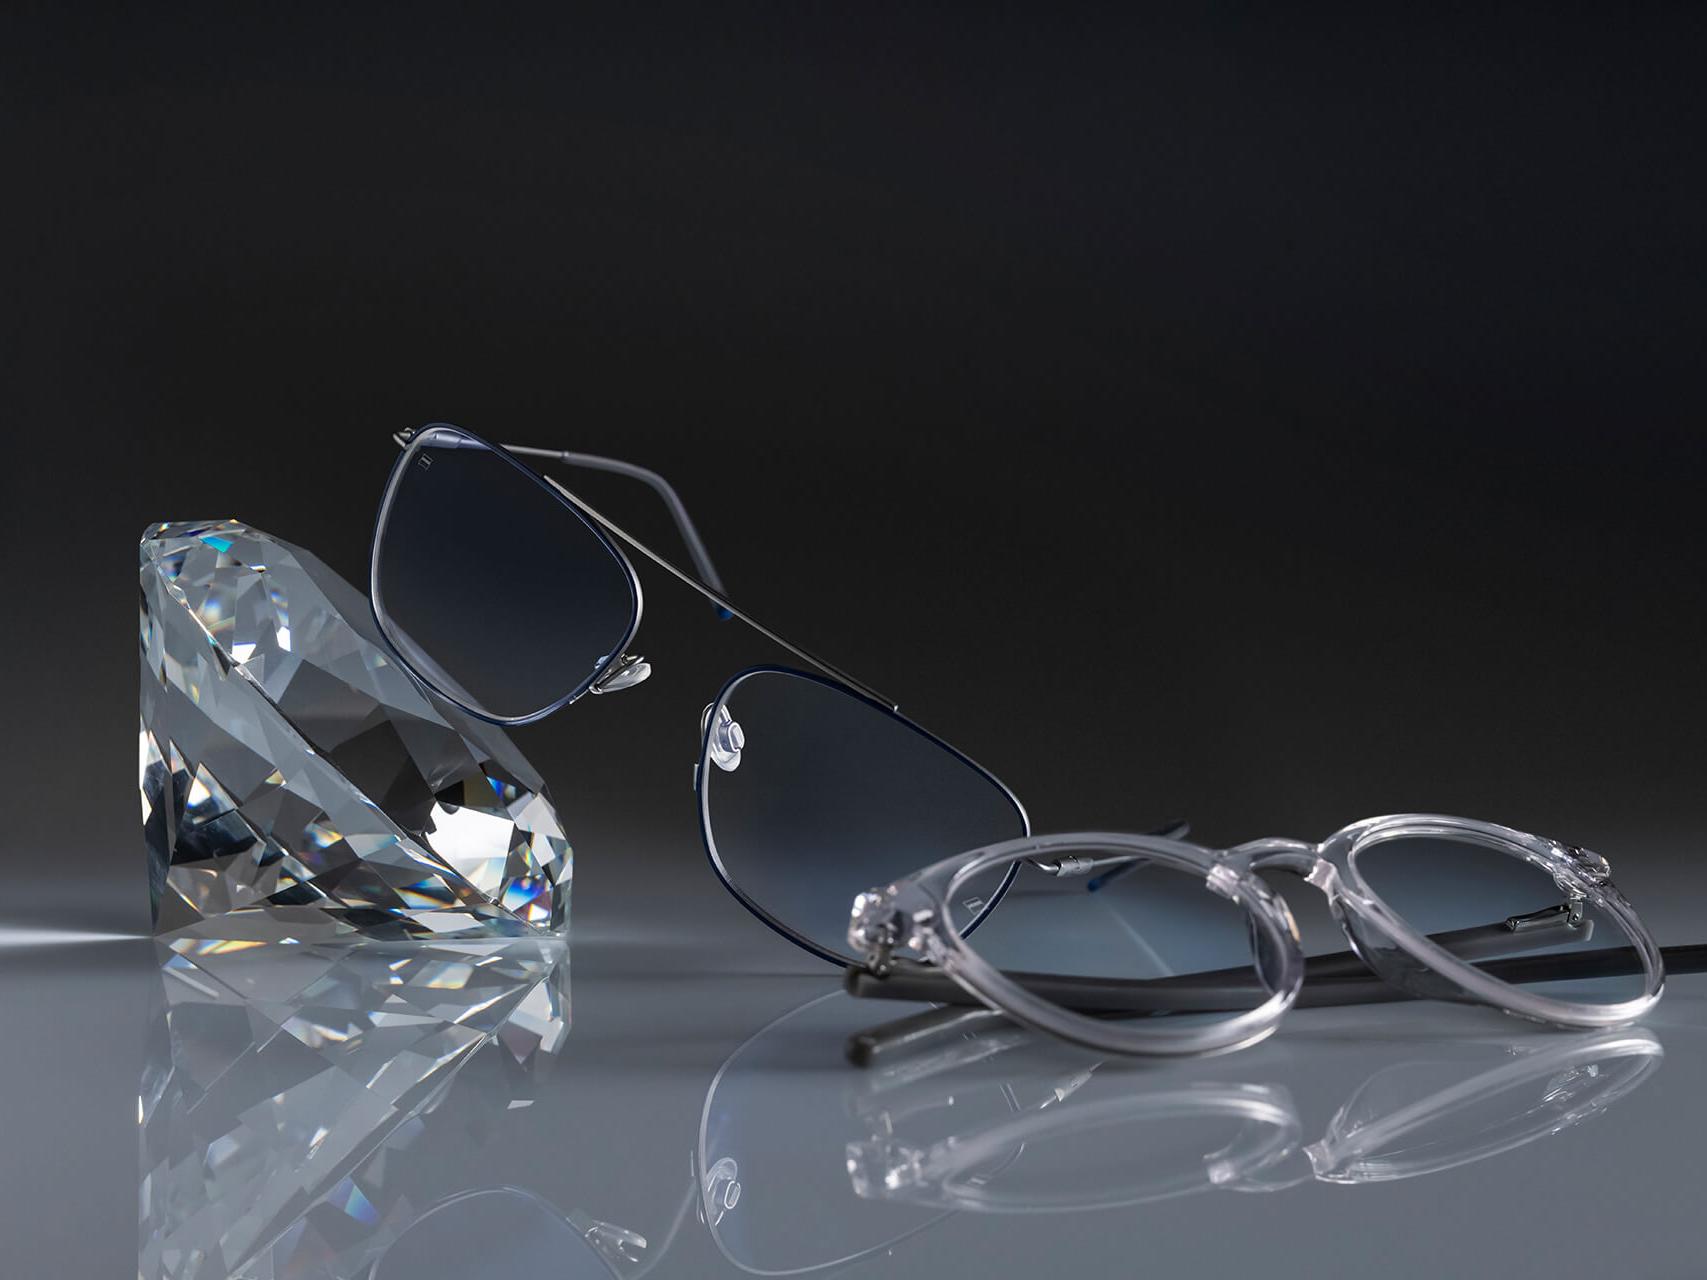 Twee brillen met ZEISS brillenglazen met de hardste ZEISS coating ooit - DuraVision® Platinum. Eén bril leunt tegen een kristal, de andere ligt plat op de grond. Beide hebben heldere brillenglazen zonder blauwachtige reflectie.